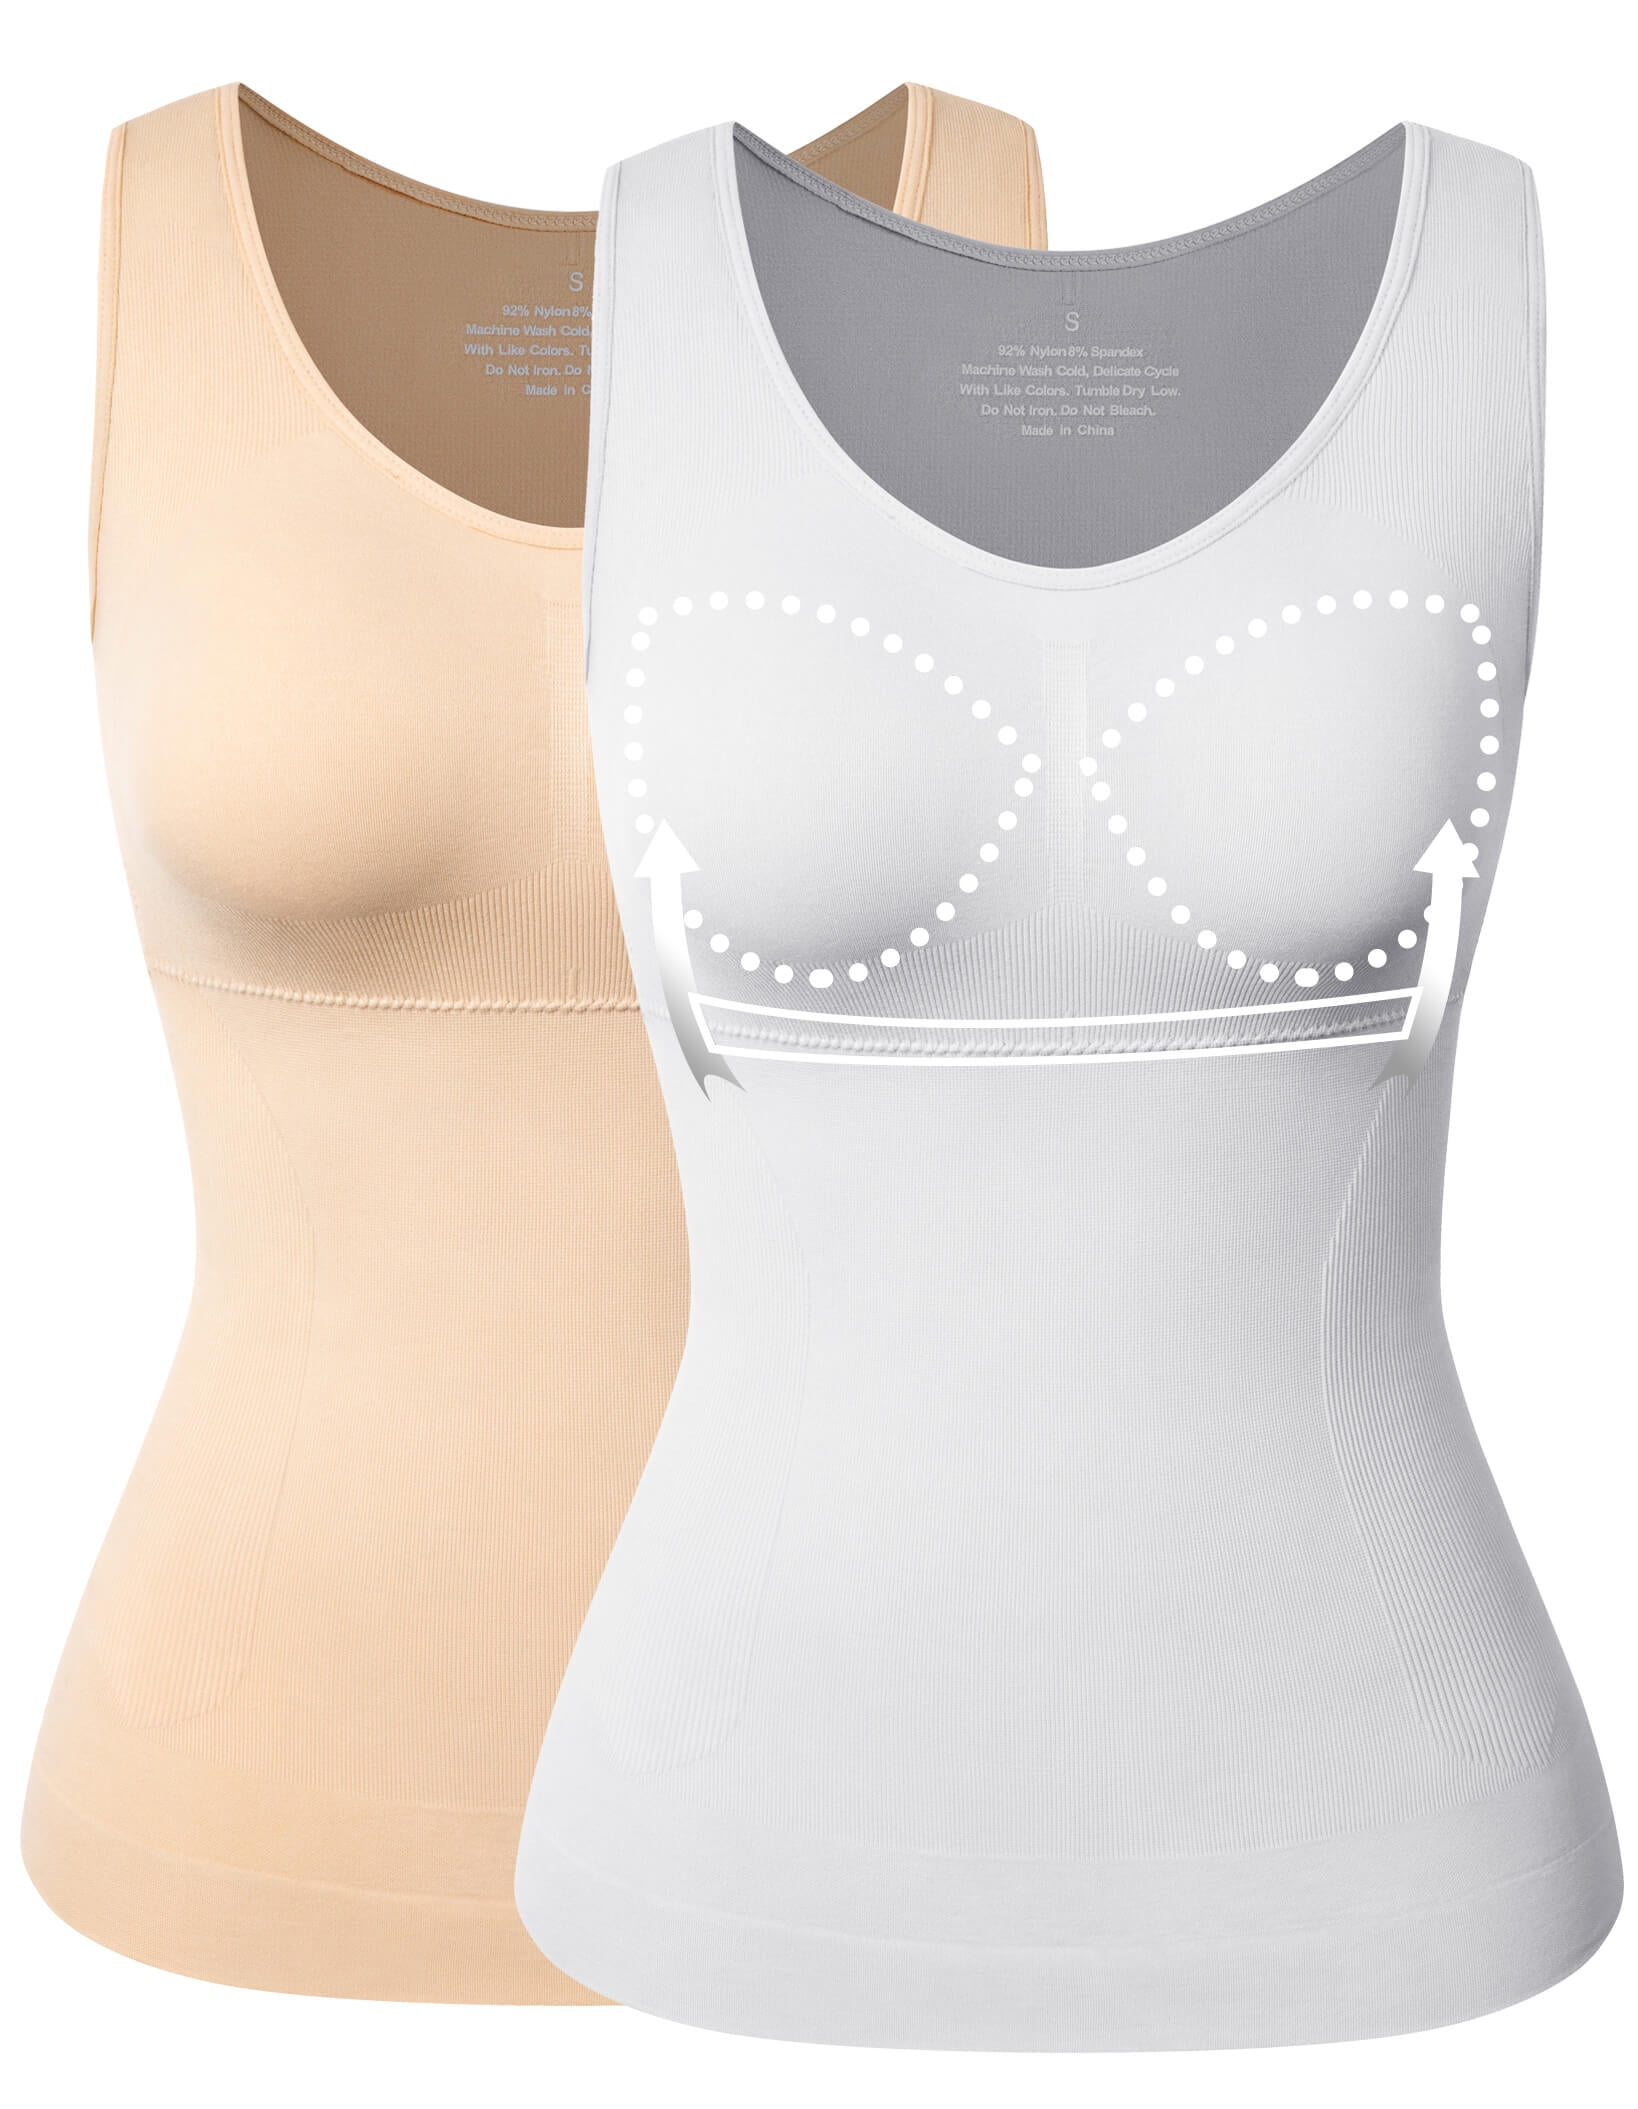 Women's Tummy Control Shapewear Tank Tops - Seamless Body Shaper